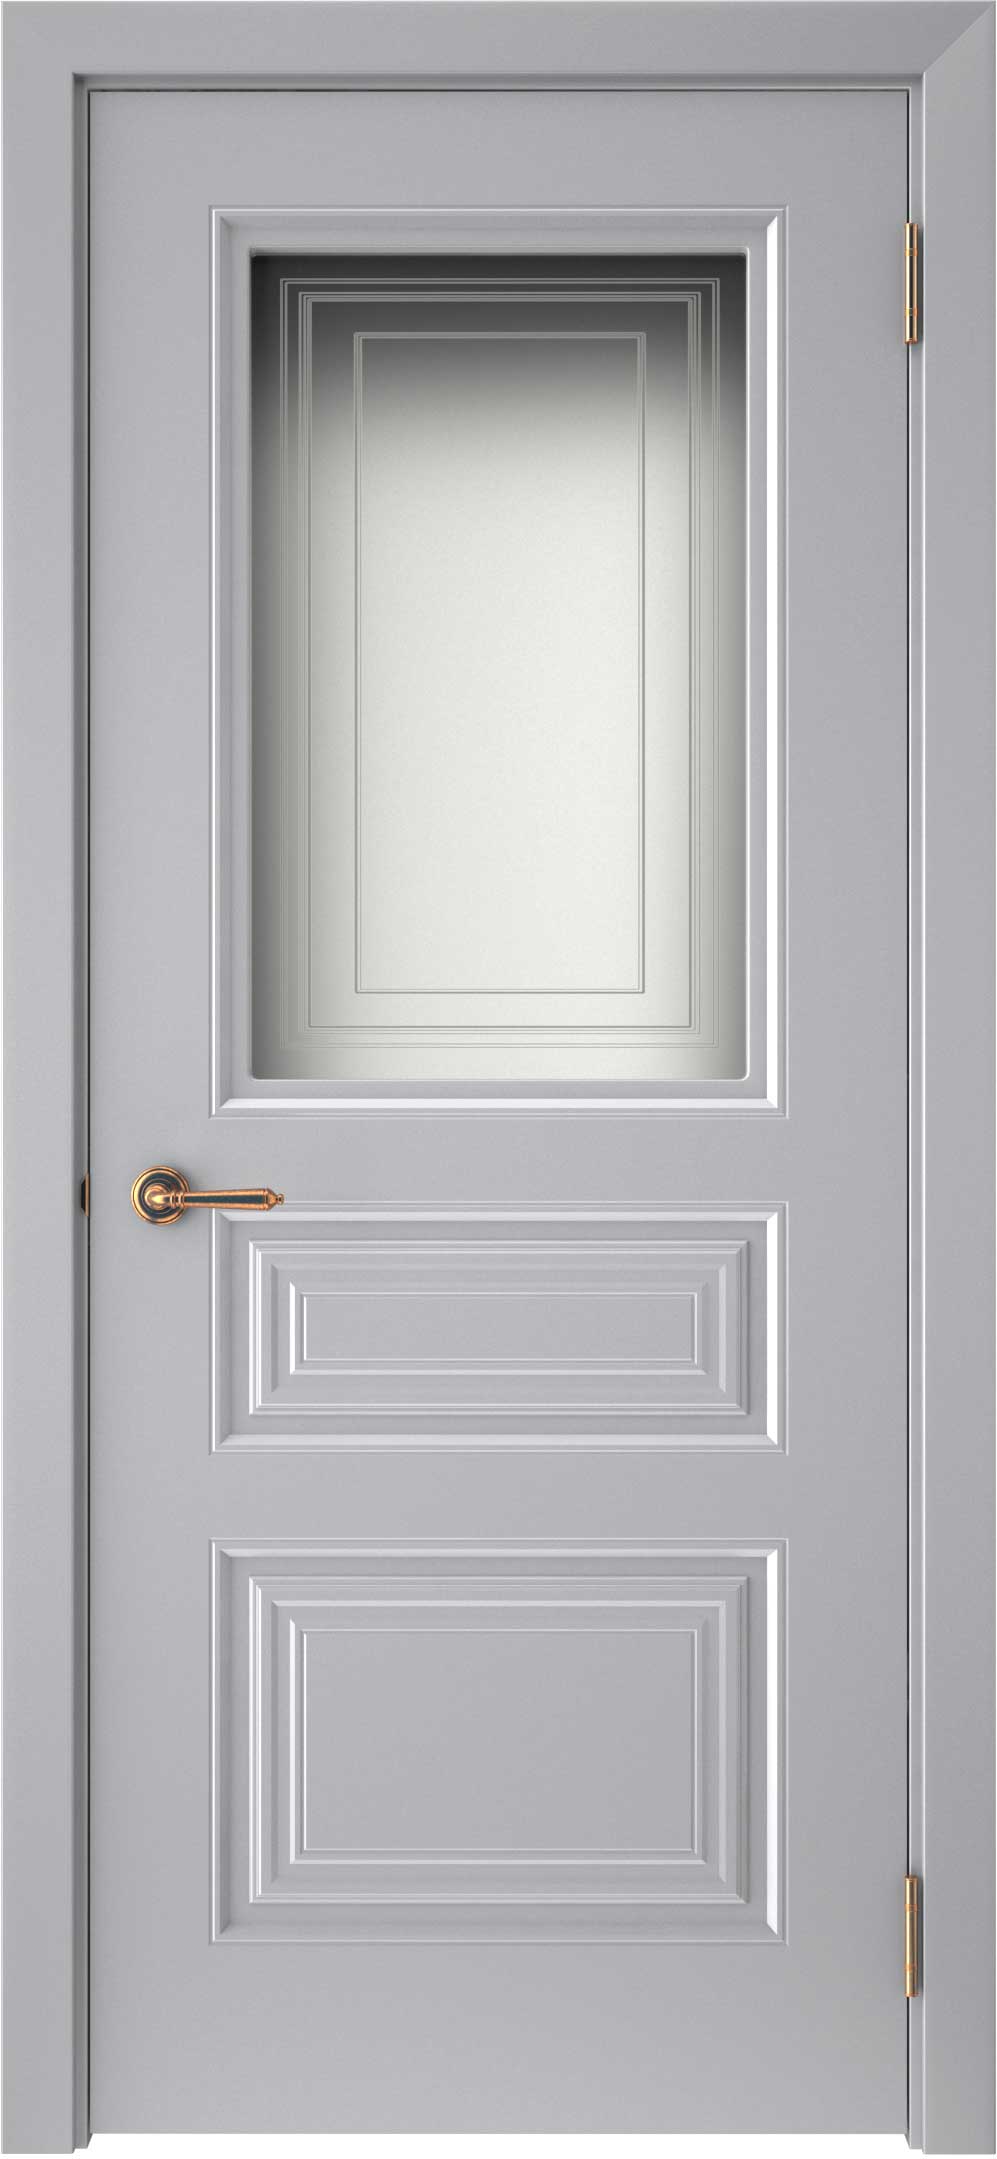 Двери крашеные (Эмаль) ТЕКОНА Смальта-44 со стеклом Серый ral 7036 размер 200 х 60 см. артикул F0000093313